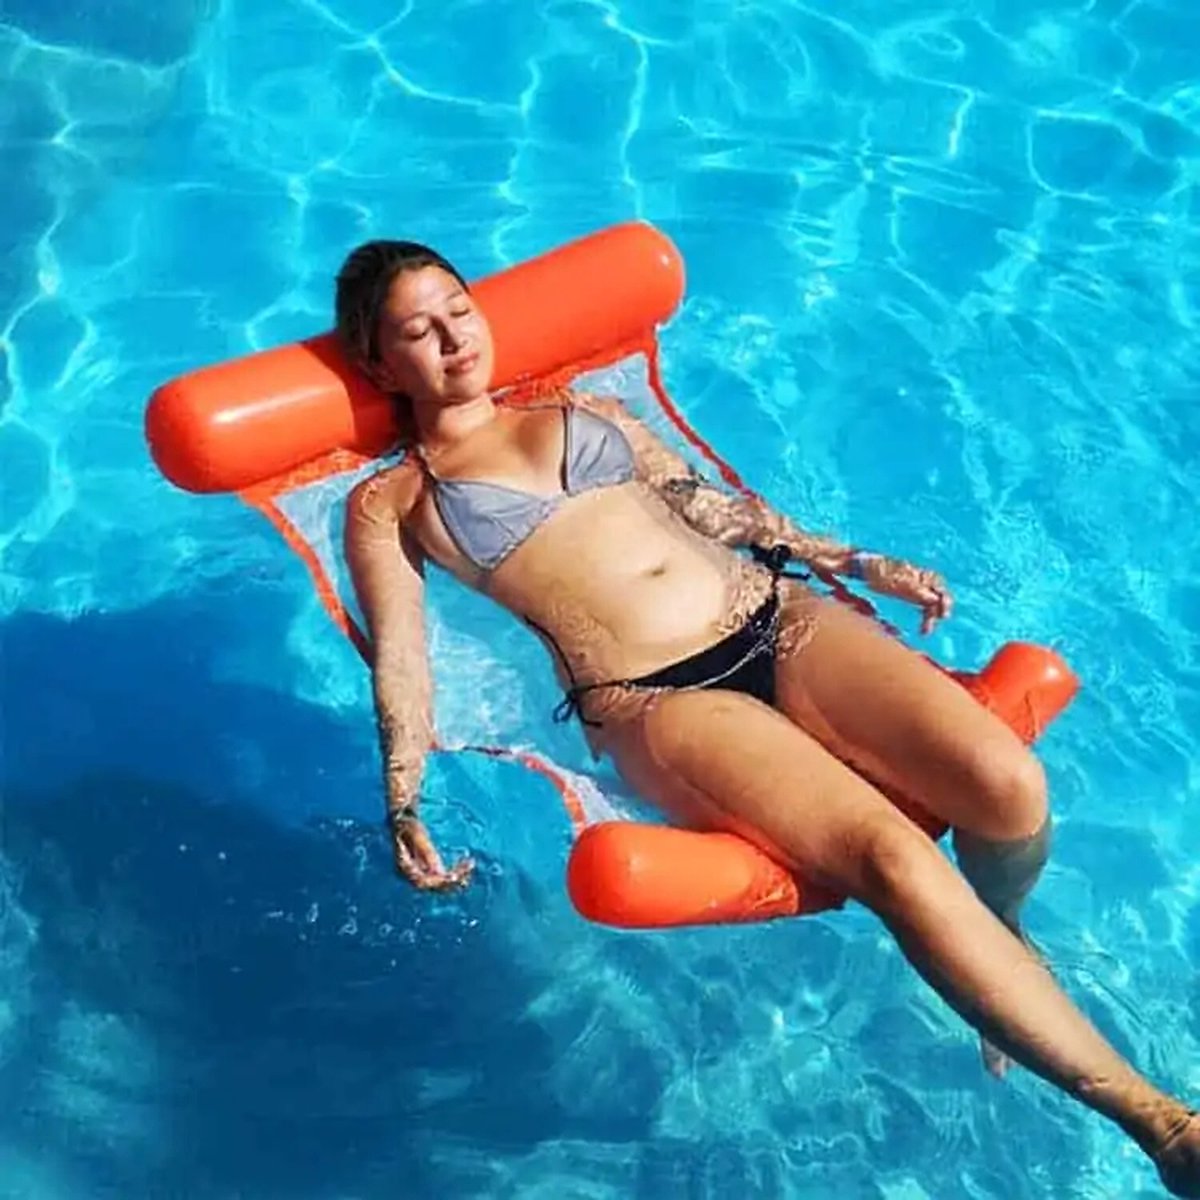 Zwembad hangmat - Luchtbed - Opblaasbaar zwembadspeelgoed - Zwemmen - 130 x 70 cm - PVC - oranje